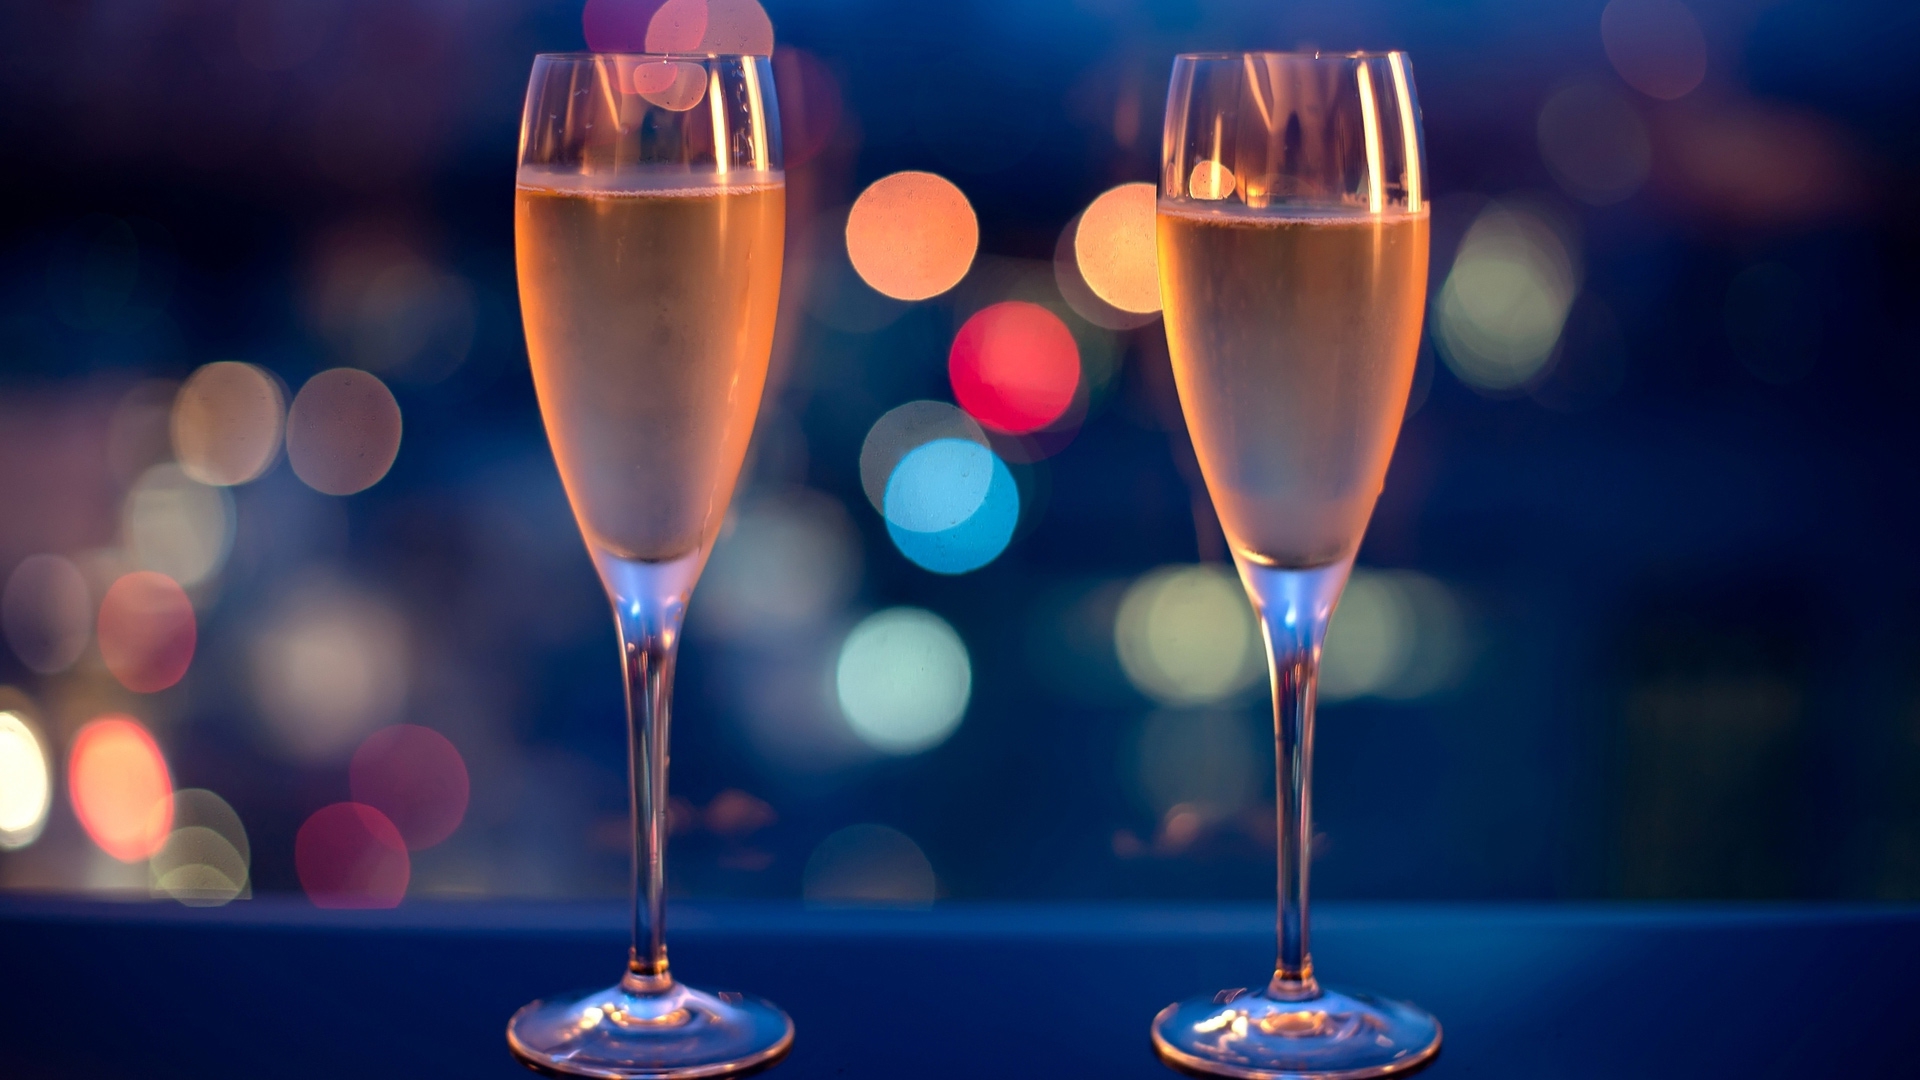 Обои романтизм два бокала шампанское на рабочий стол